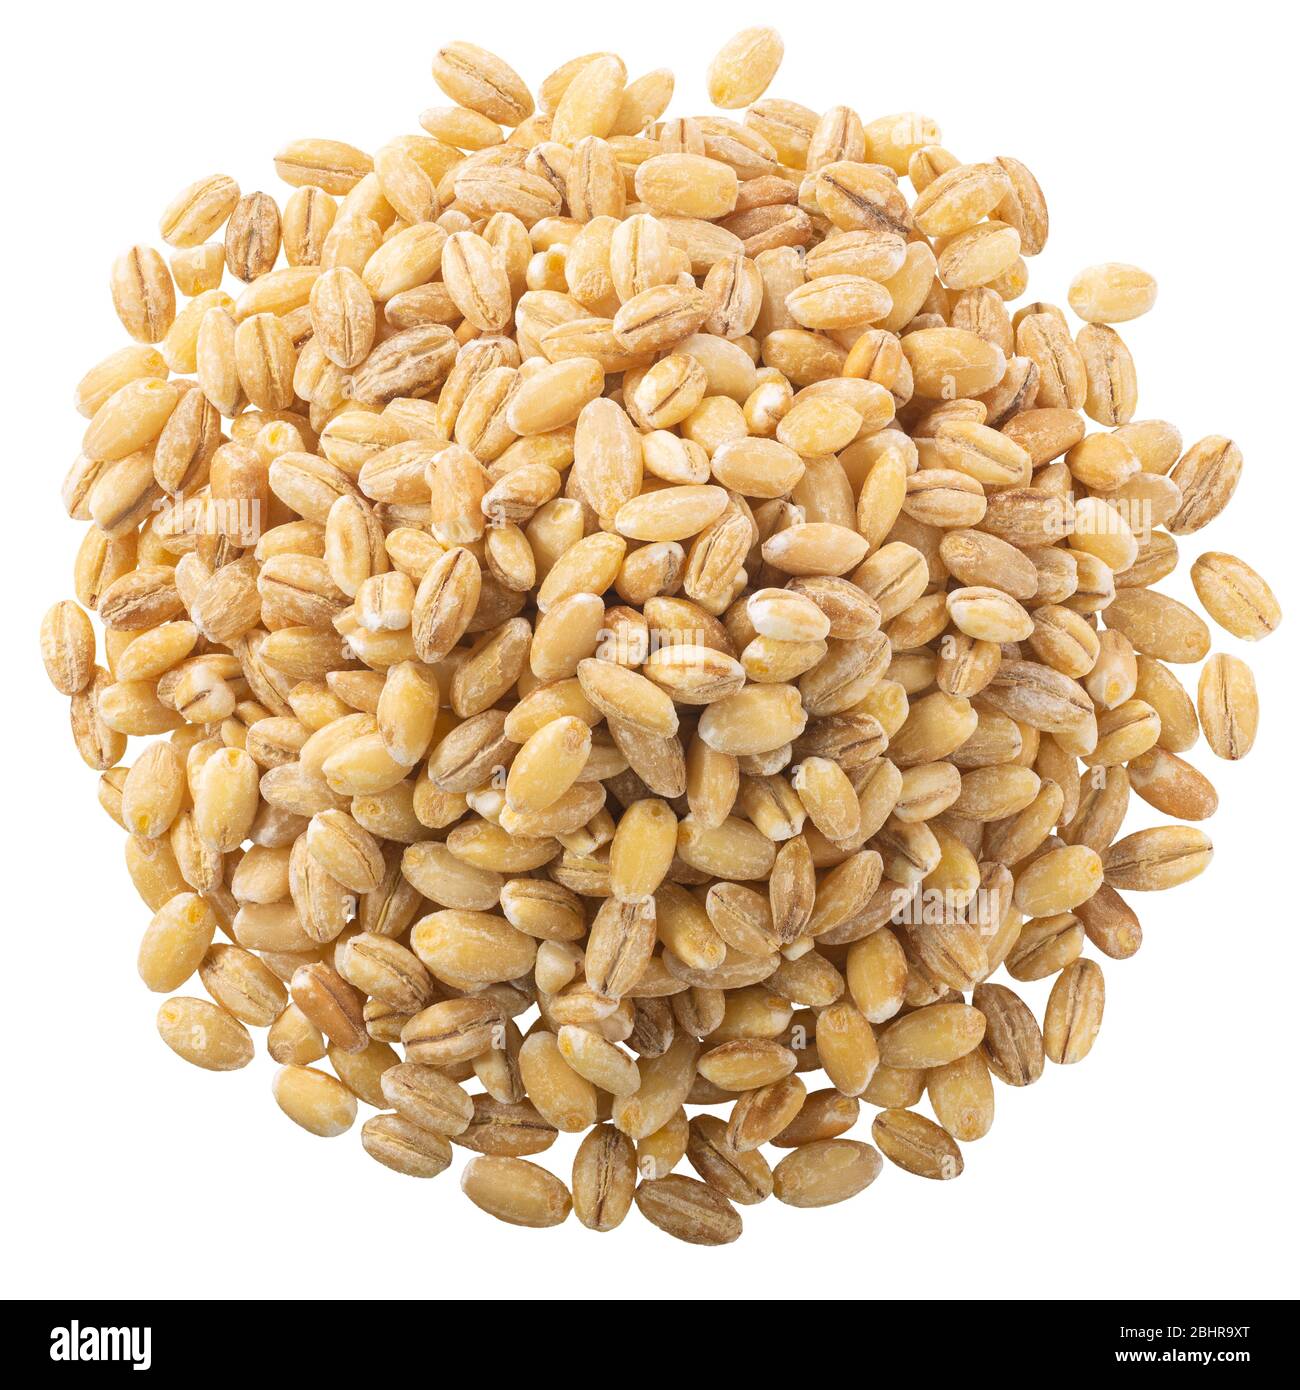 Mucchio di orzo perlato crudo, un cereale integrale, isolato, vista dall'alto Foto Stock